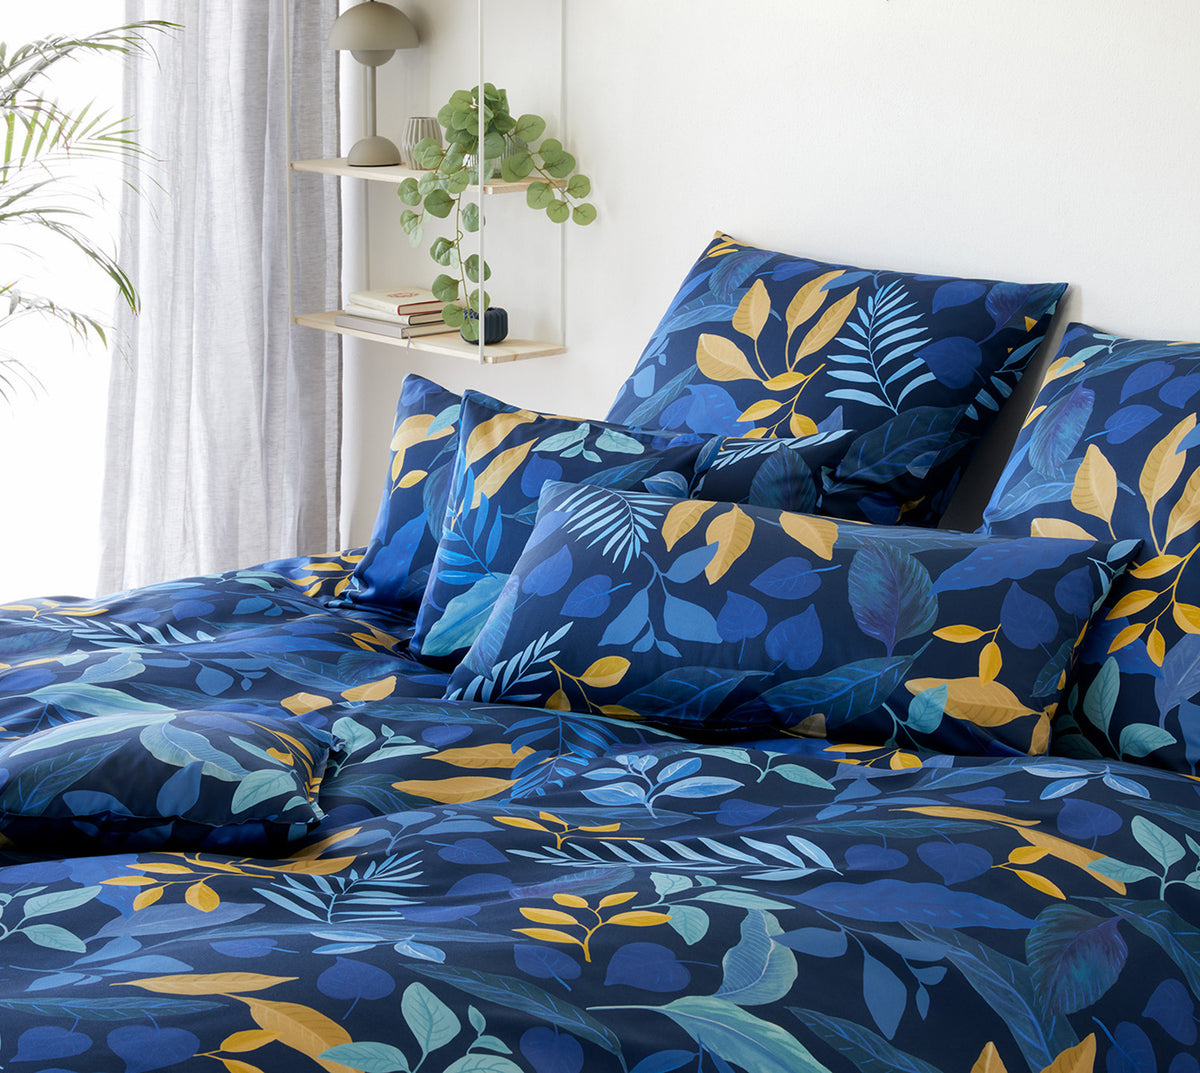 Seiden Satin Bettwaesche Phantasy in Blau Blaetter Schlafzimmer #farbe_Nachtblau Camel